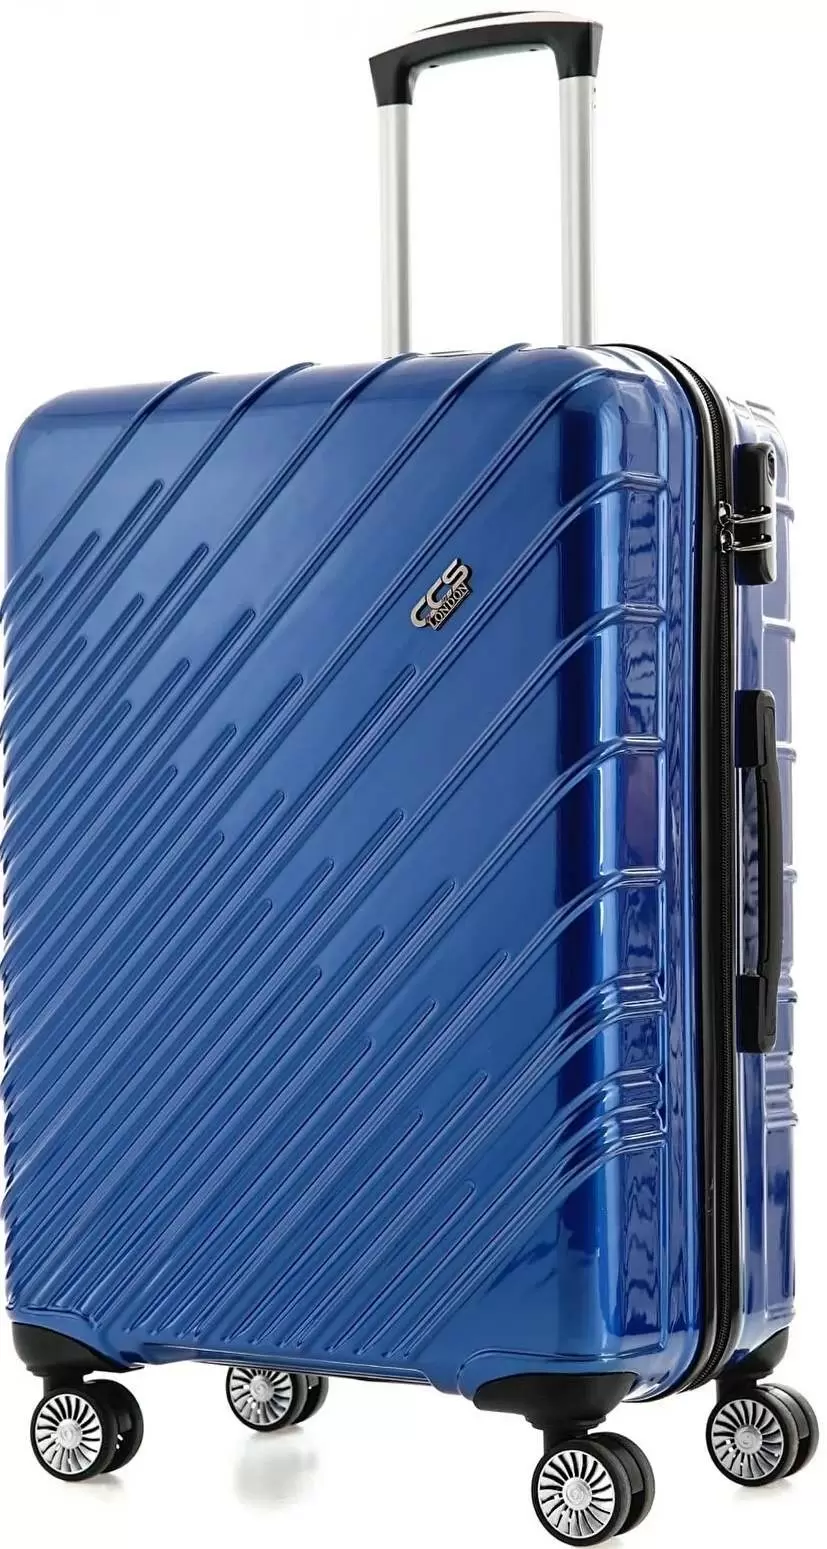 Комплект чемоданов CCS 5234 Set, синий